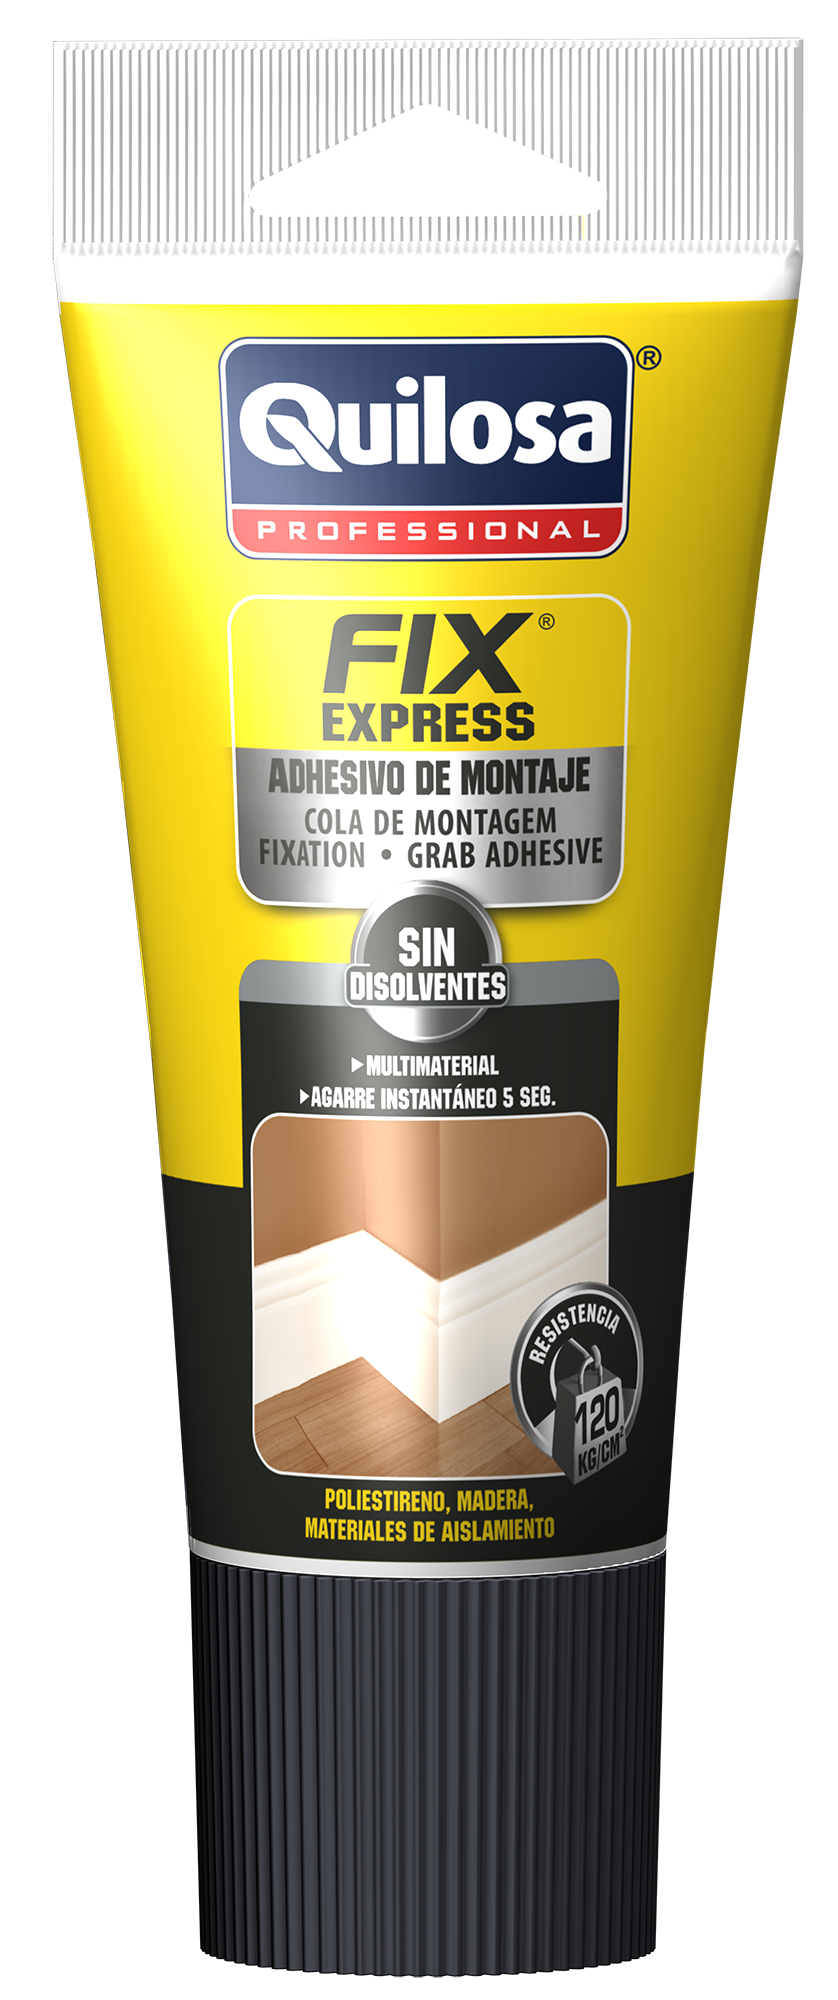 FIX KIT CA-30 Adhesivo de Cianoacrilato + Activador en Spray - Quilosa